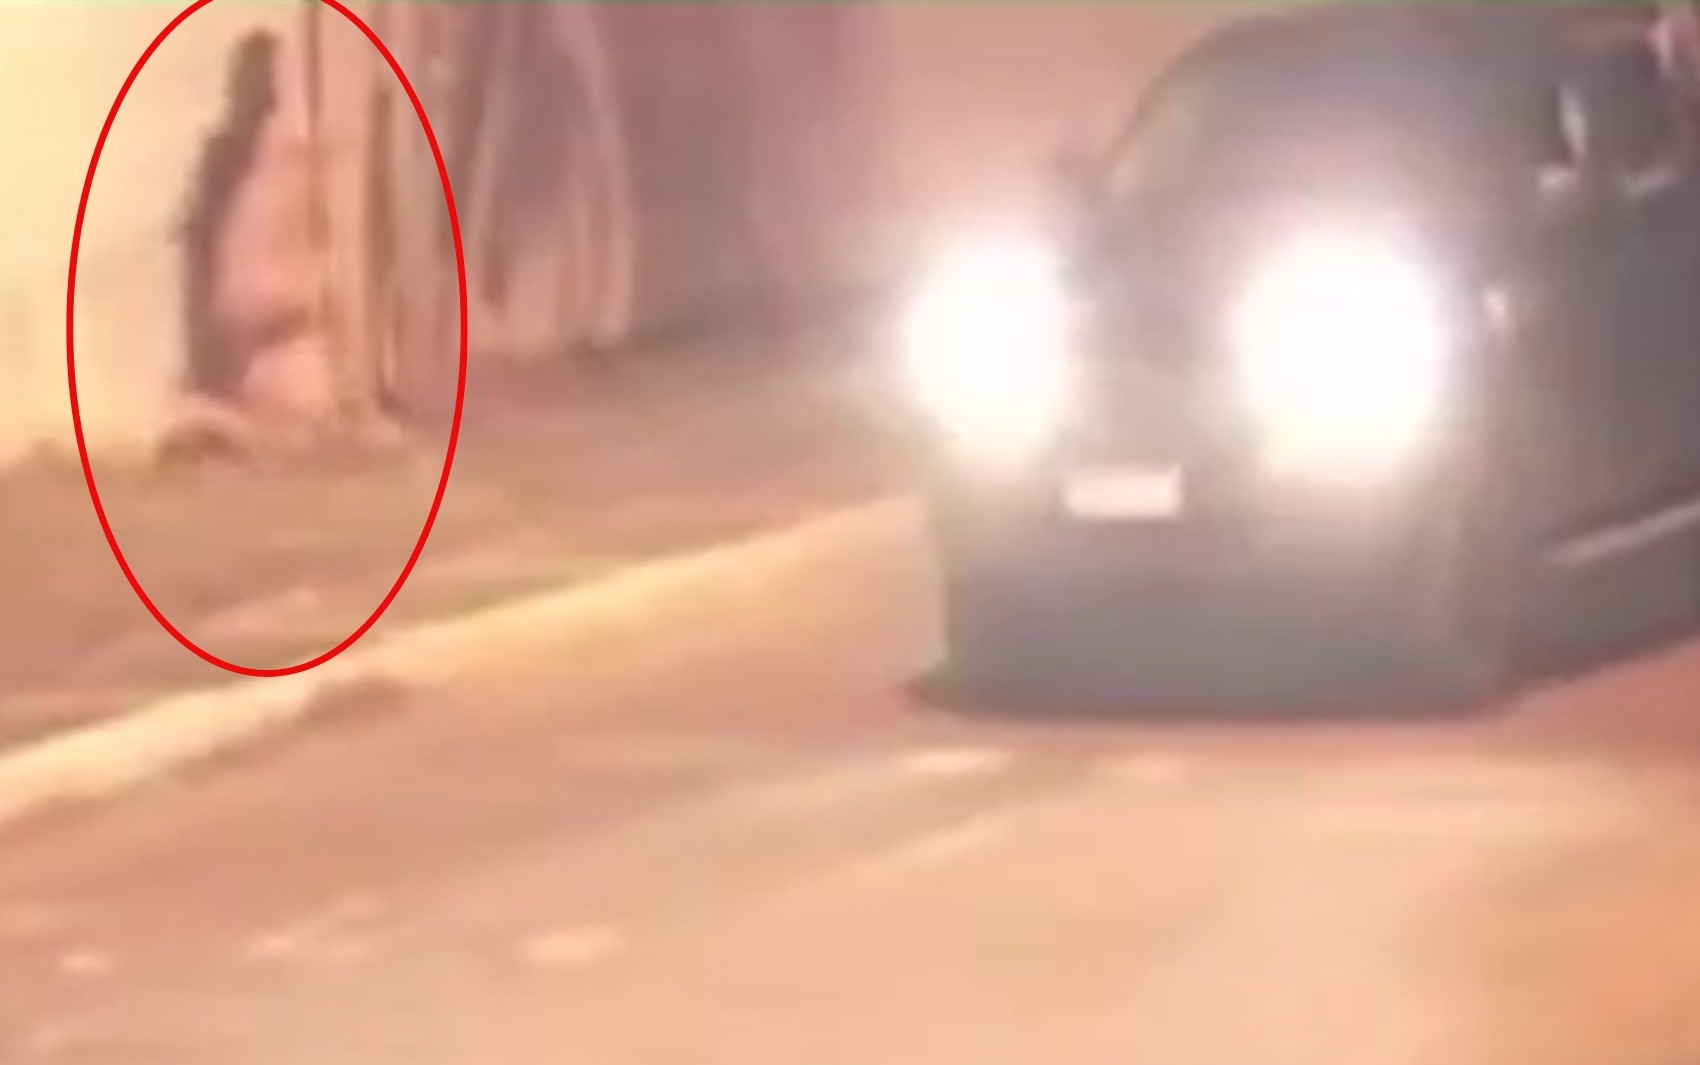 PM em carro do TJ é suspeito de atirar em garota de programa em Aparecida de Goiânia; vídeo 